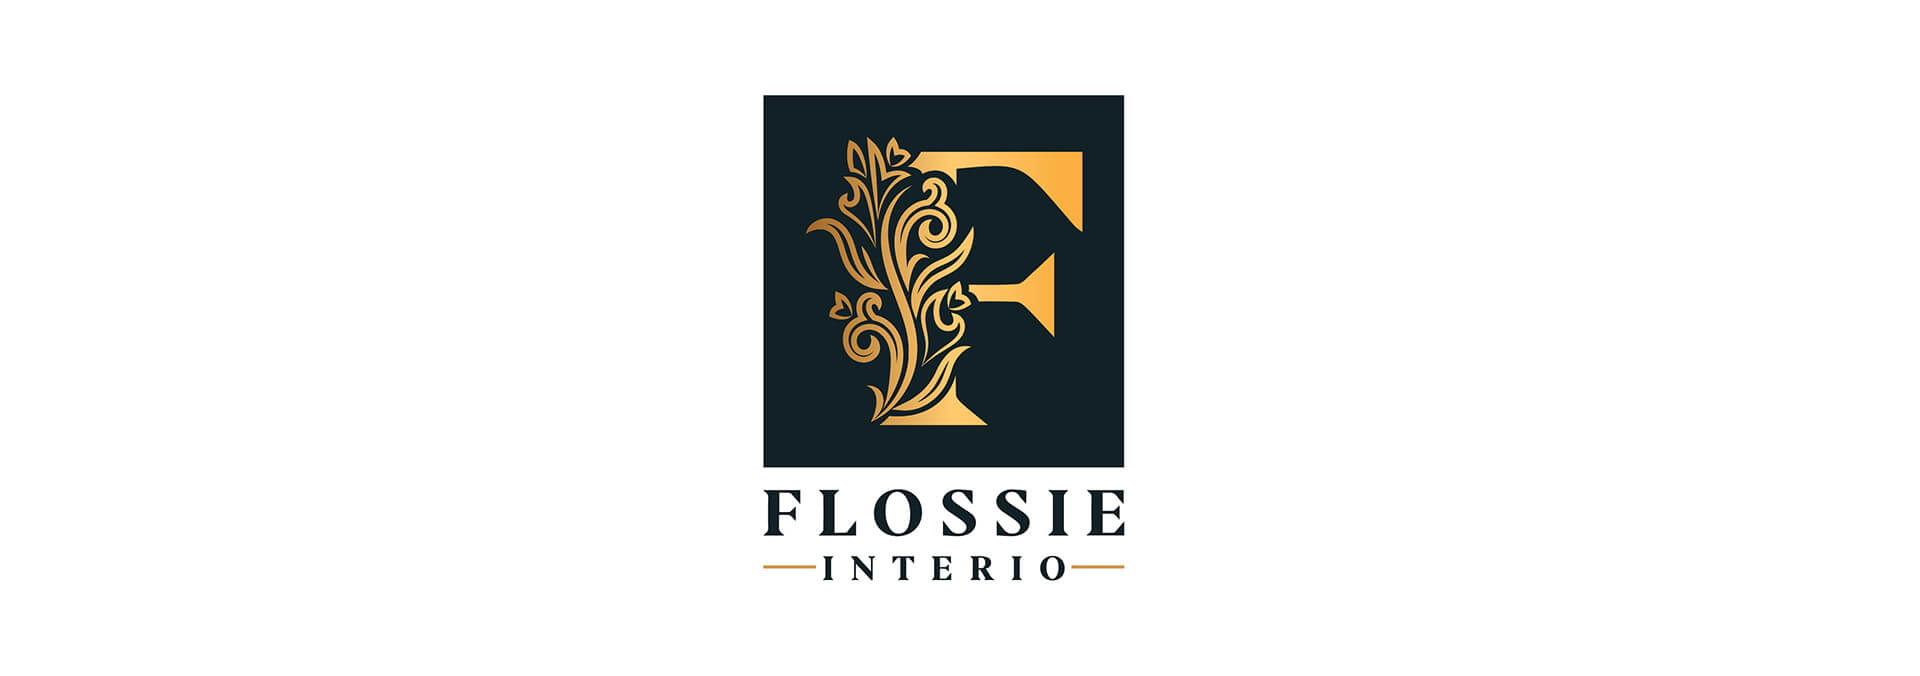 Flossie interio banner